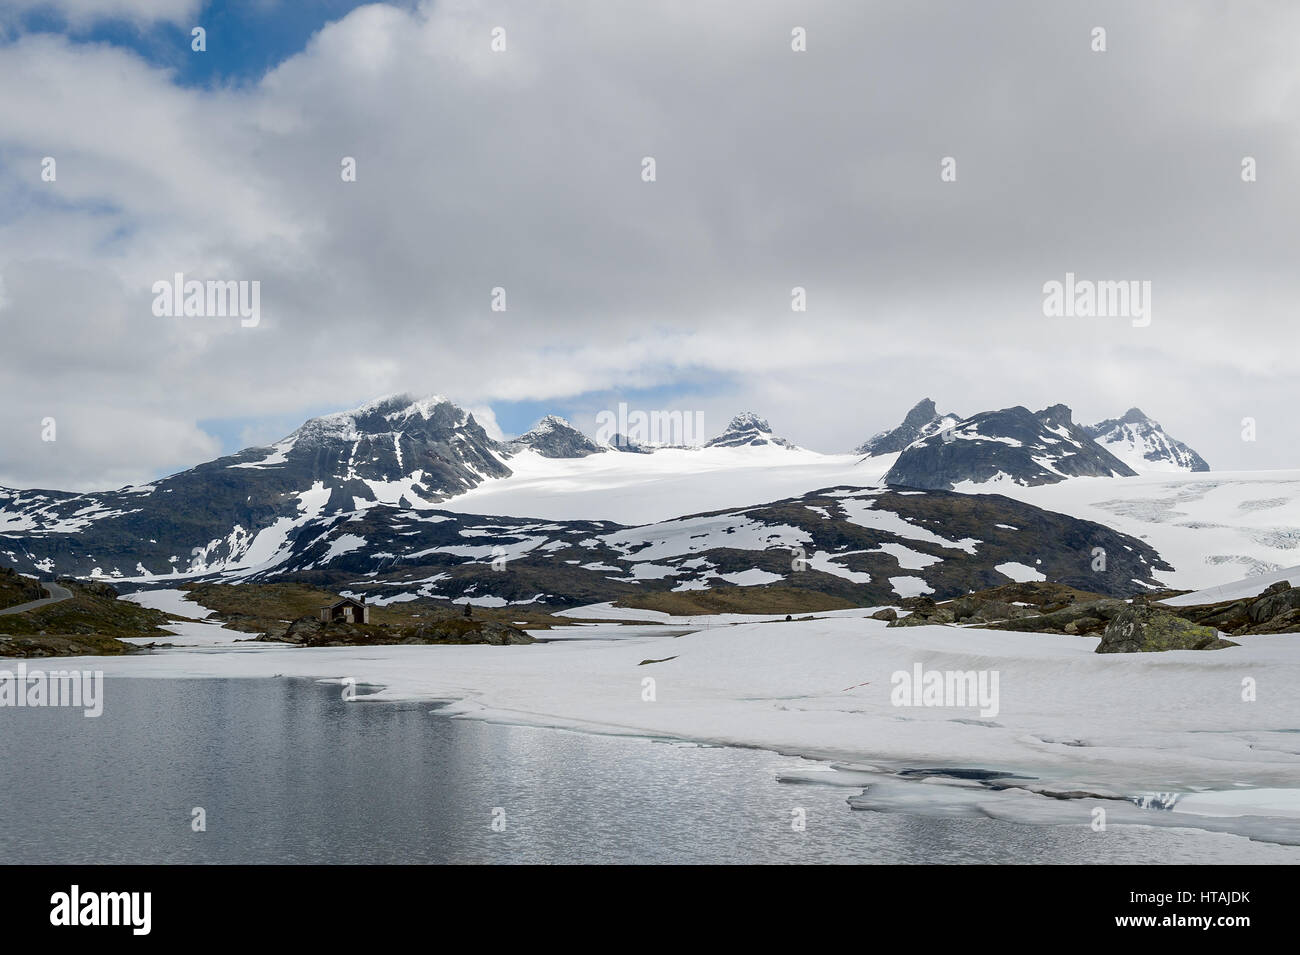 Paysage de montagne enneigée avec le lac et les rochers. Route touristique national. Sognefjellet, la Norvège. Banque D'Images